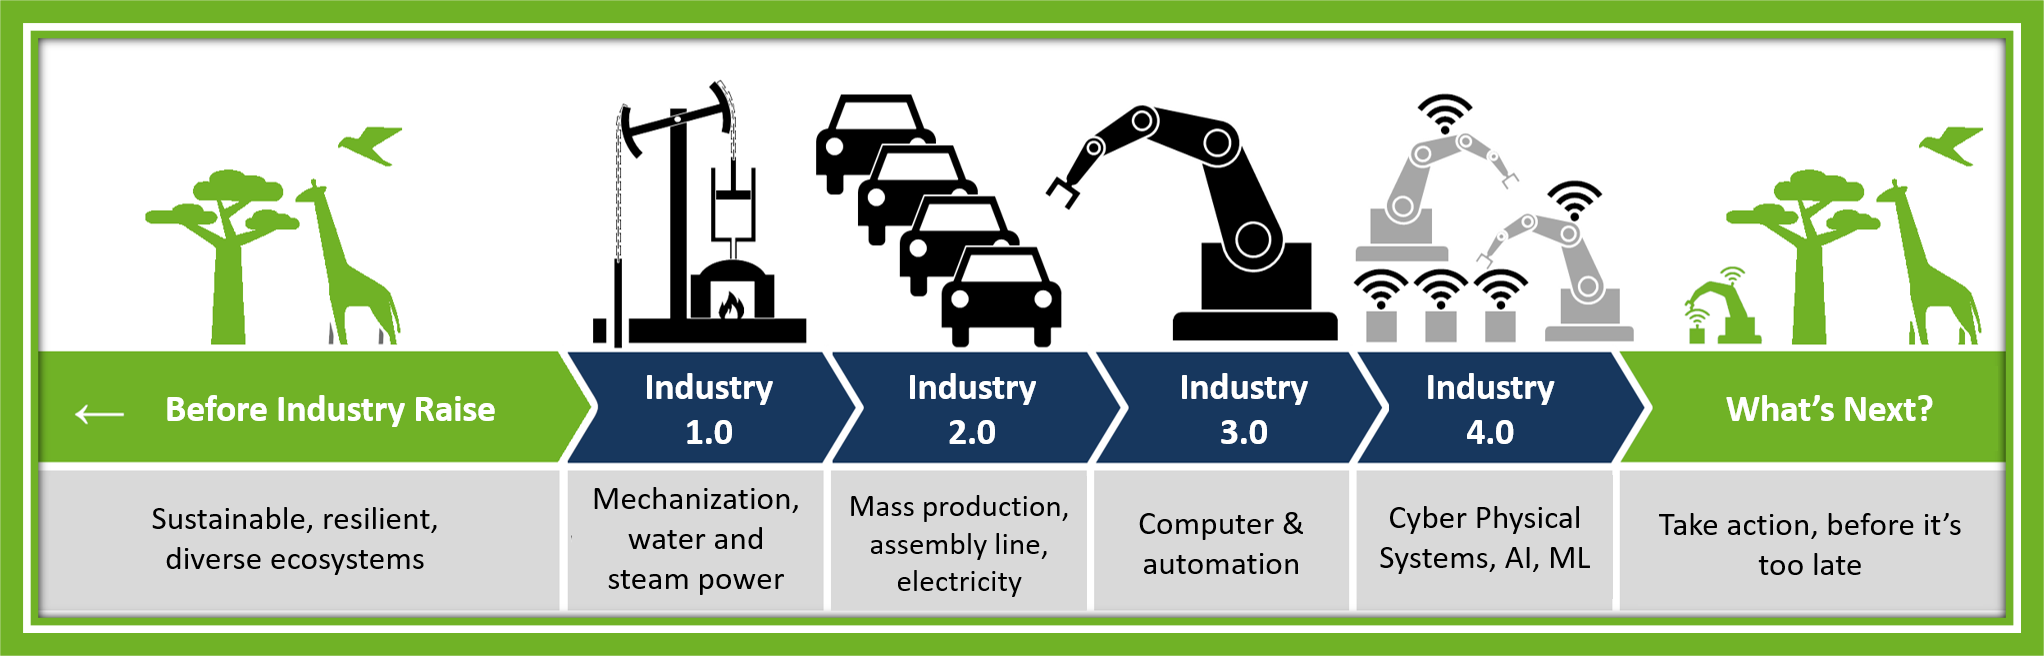 0.5 4.0. Индустрия 5.0. Индустрия 4.0. Промышленная революция 5.0. Индустрия 4.0 индустрия 5.0.